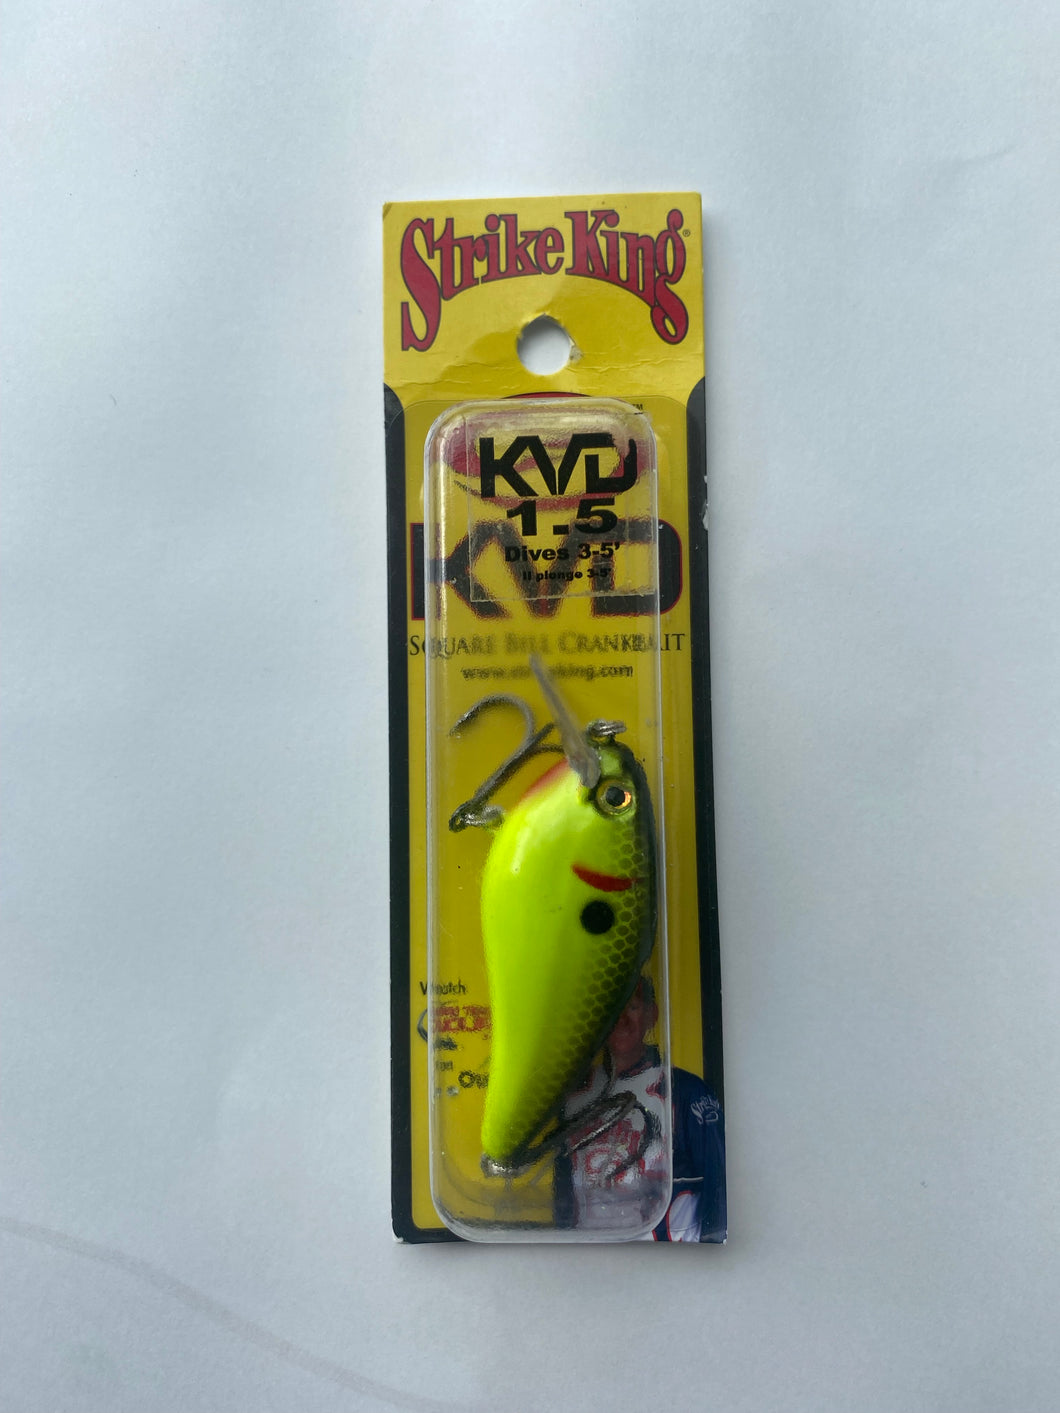 Strike King KVD Squarebill 1.5 Crankbait Black Back Chartreuse Hard Bait Lure